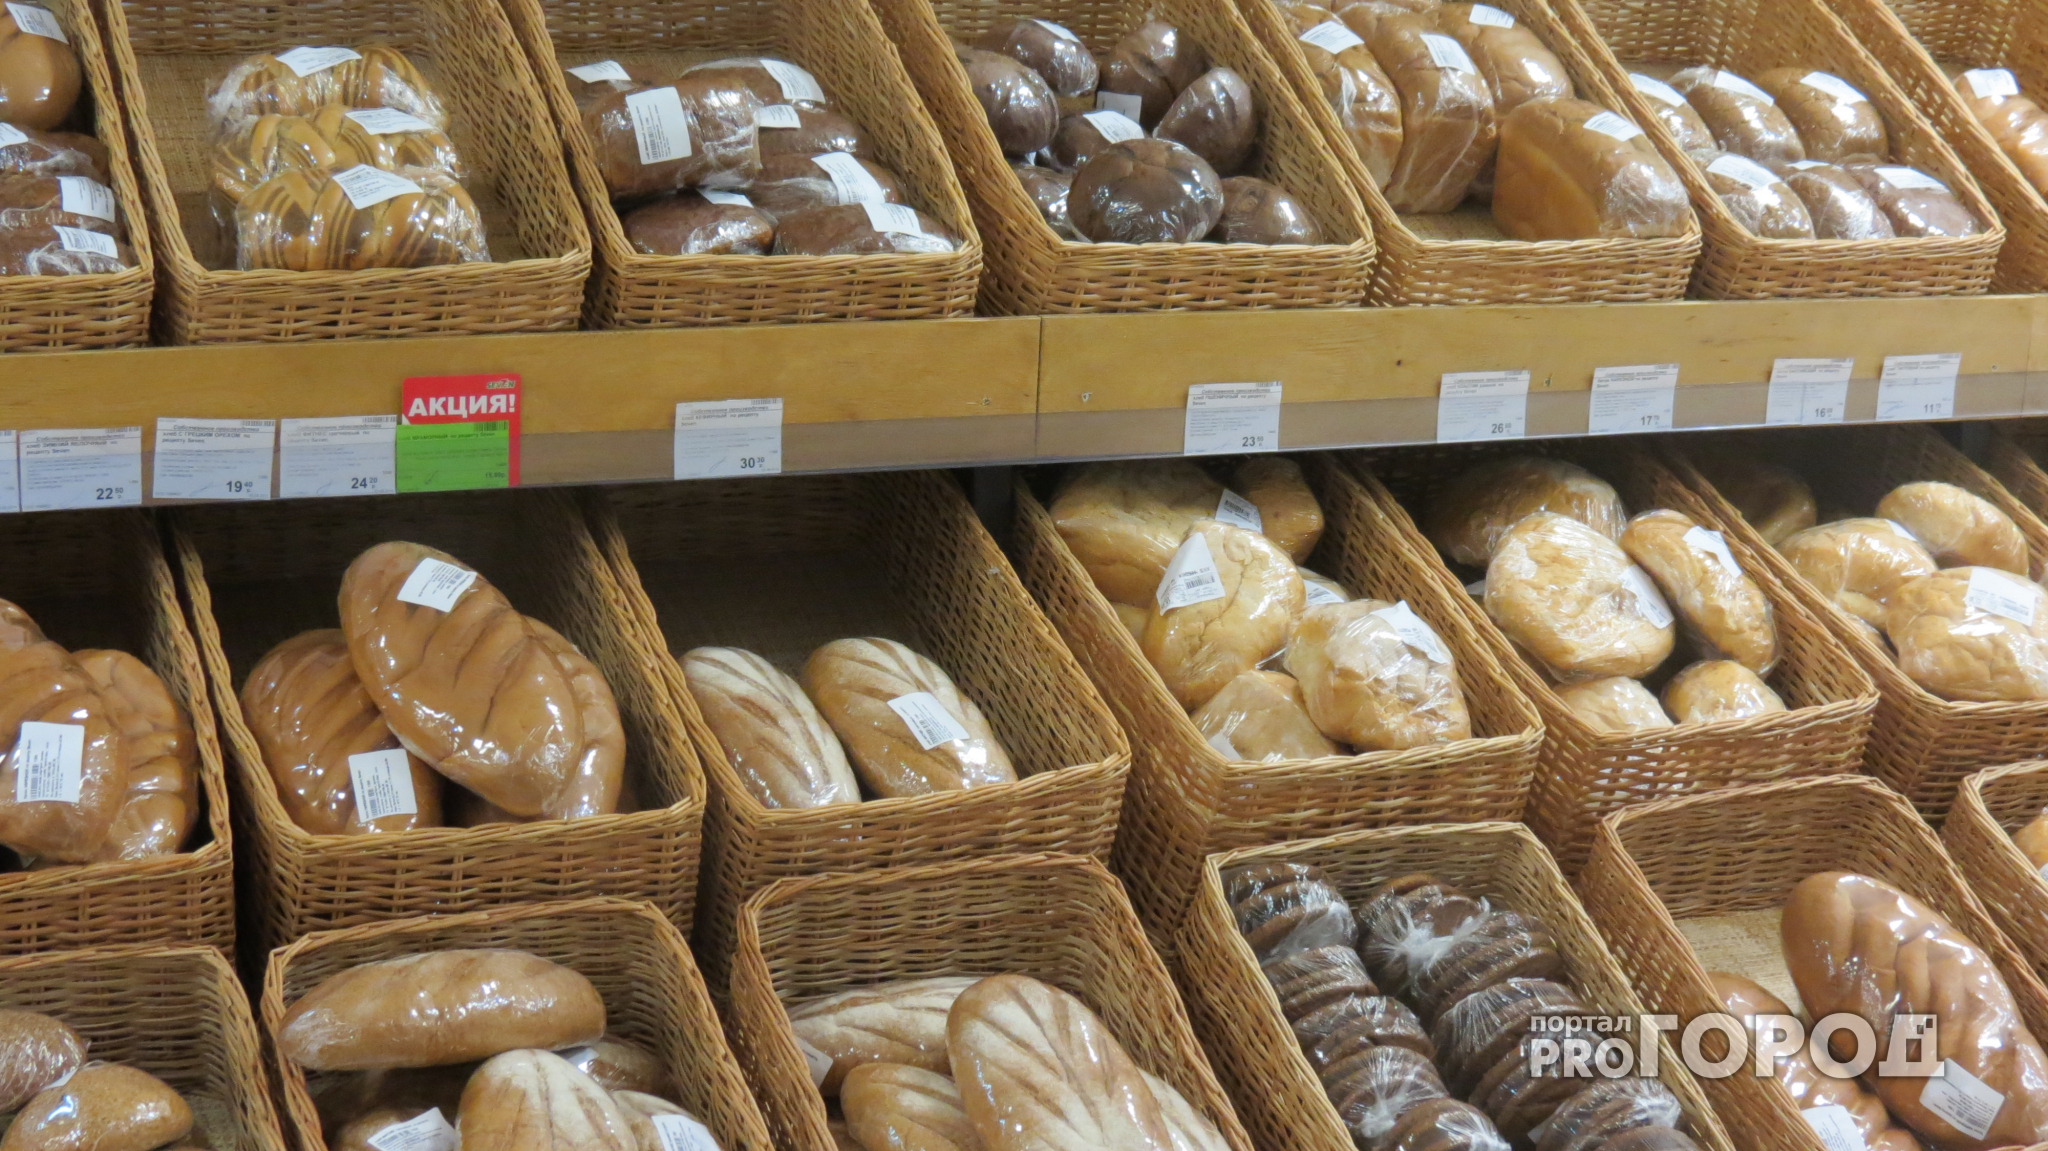 Специалисты Роскачества проверили хлеб из Коми и выяснили интересные факты